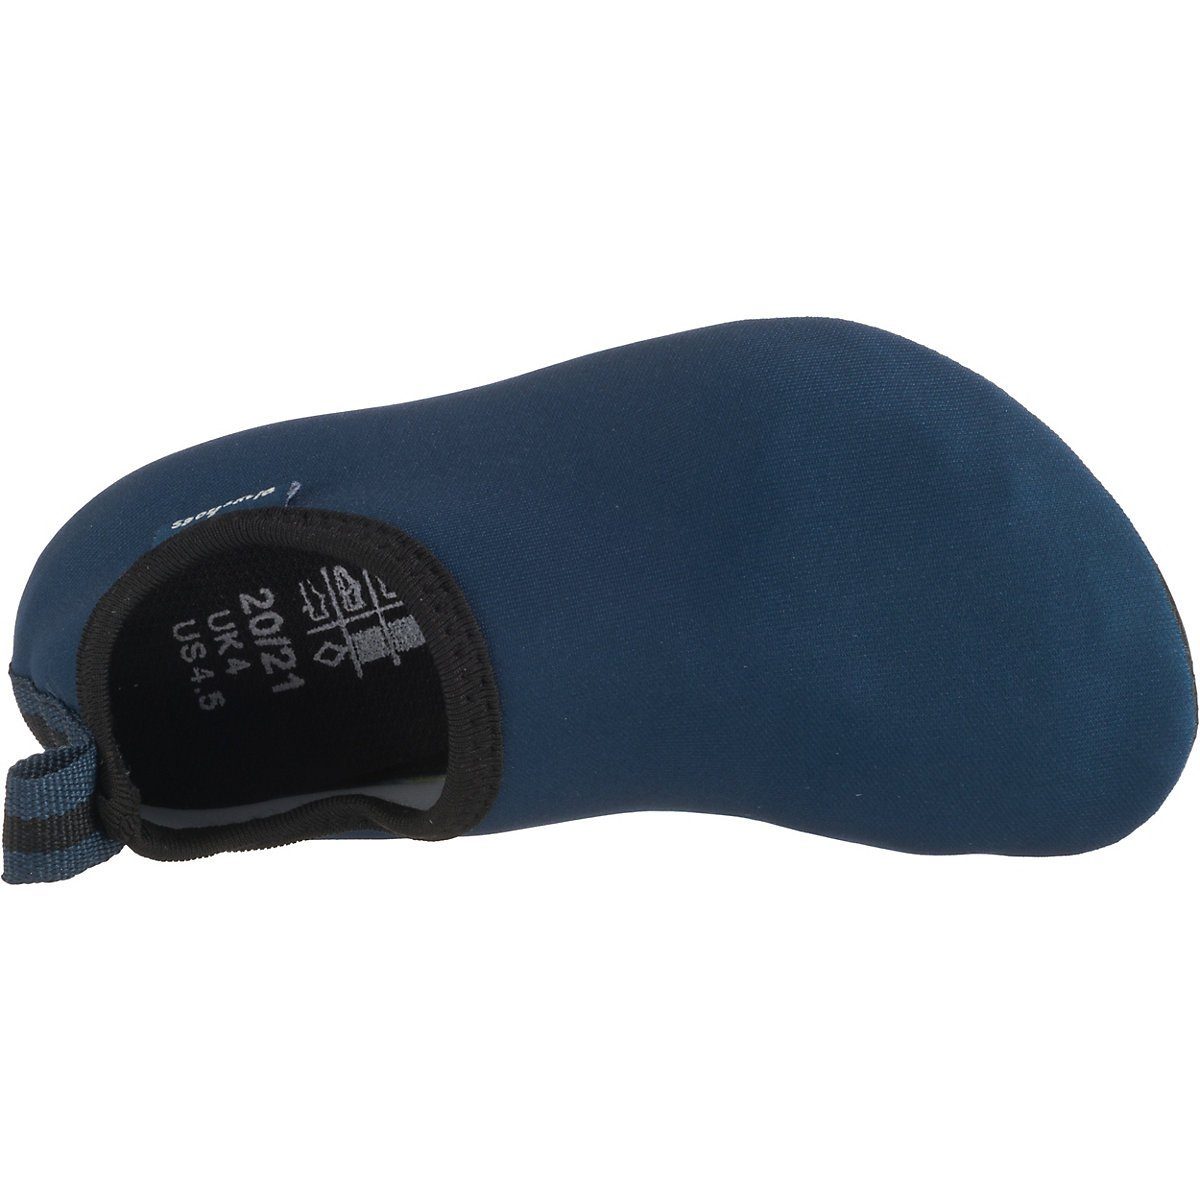 Playshoes Badeschuhe Wasserschuhe Schwimmschuhe, Sohle Badeschuh mit blau Passform, Barfuß-Schuh rutschhemmender Uni flexible